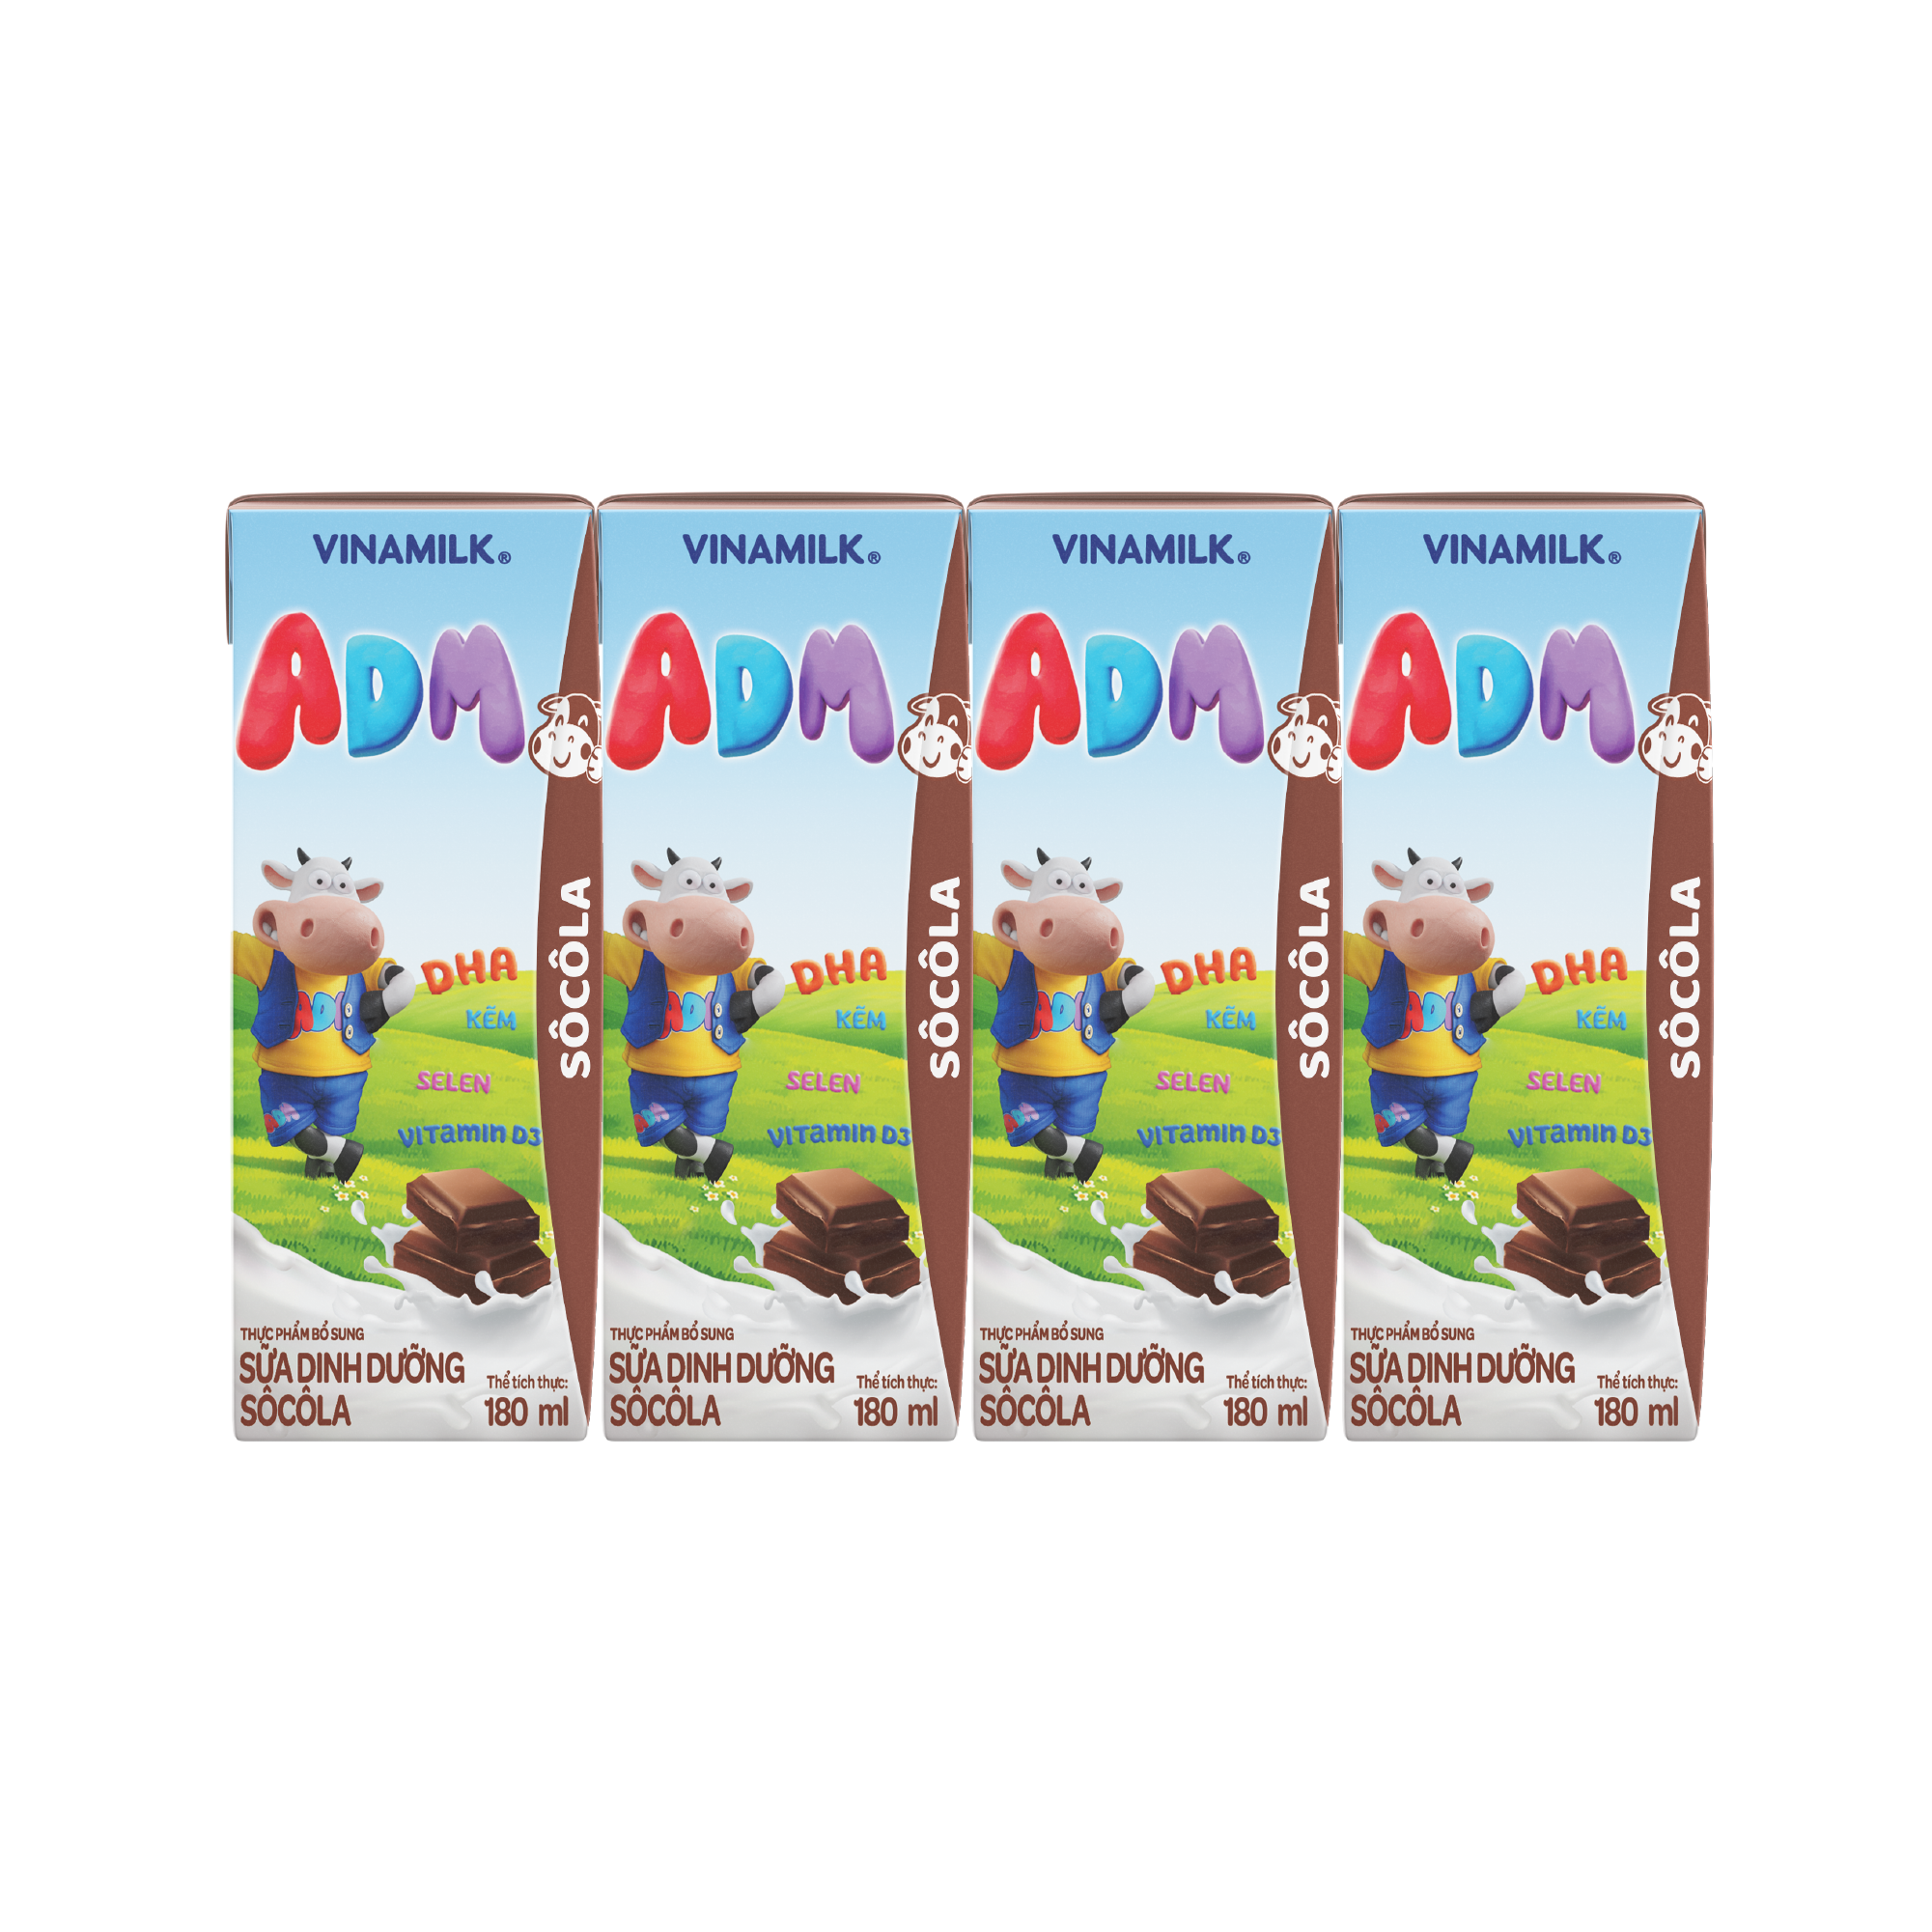 Sữa dinh dưỡng Sôcôla Vinamilk ADM - Lốc 4 Hộp x 180ml